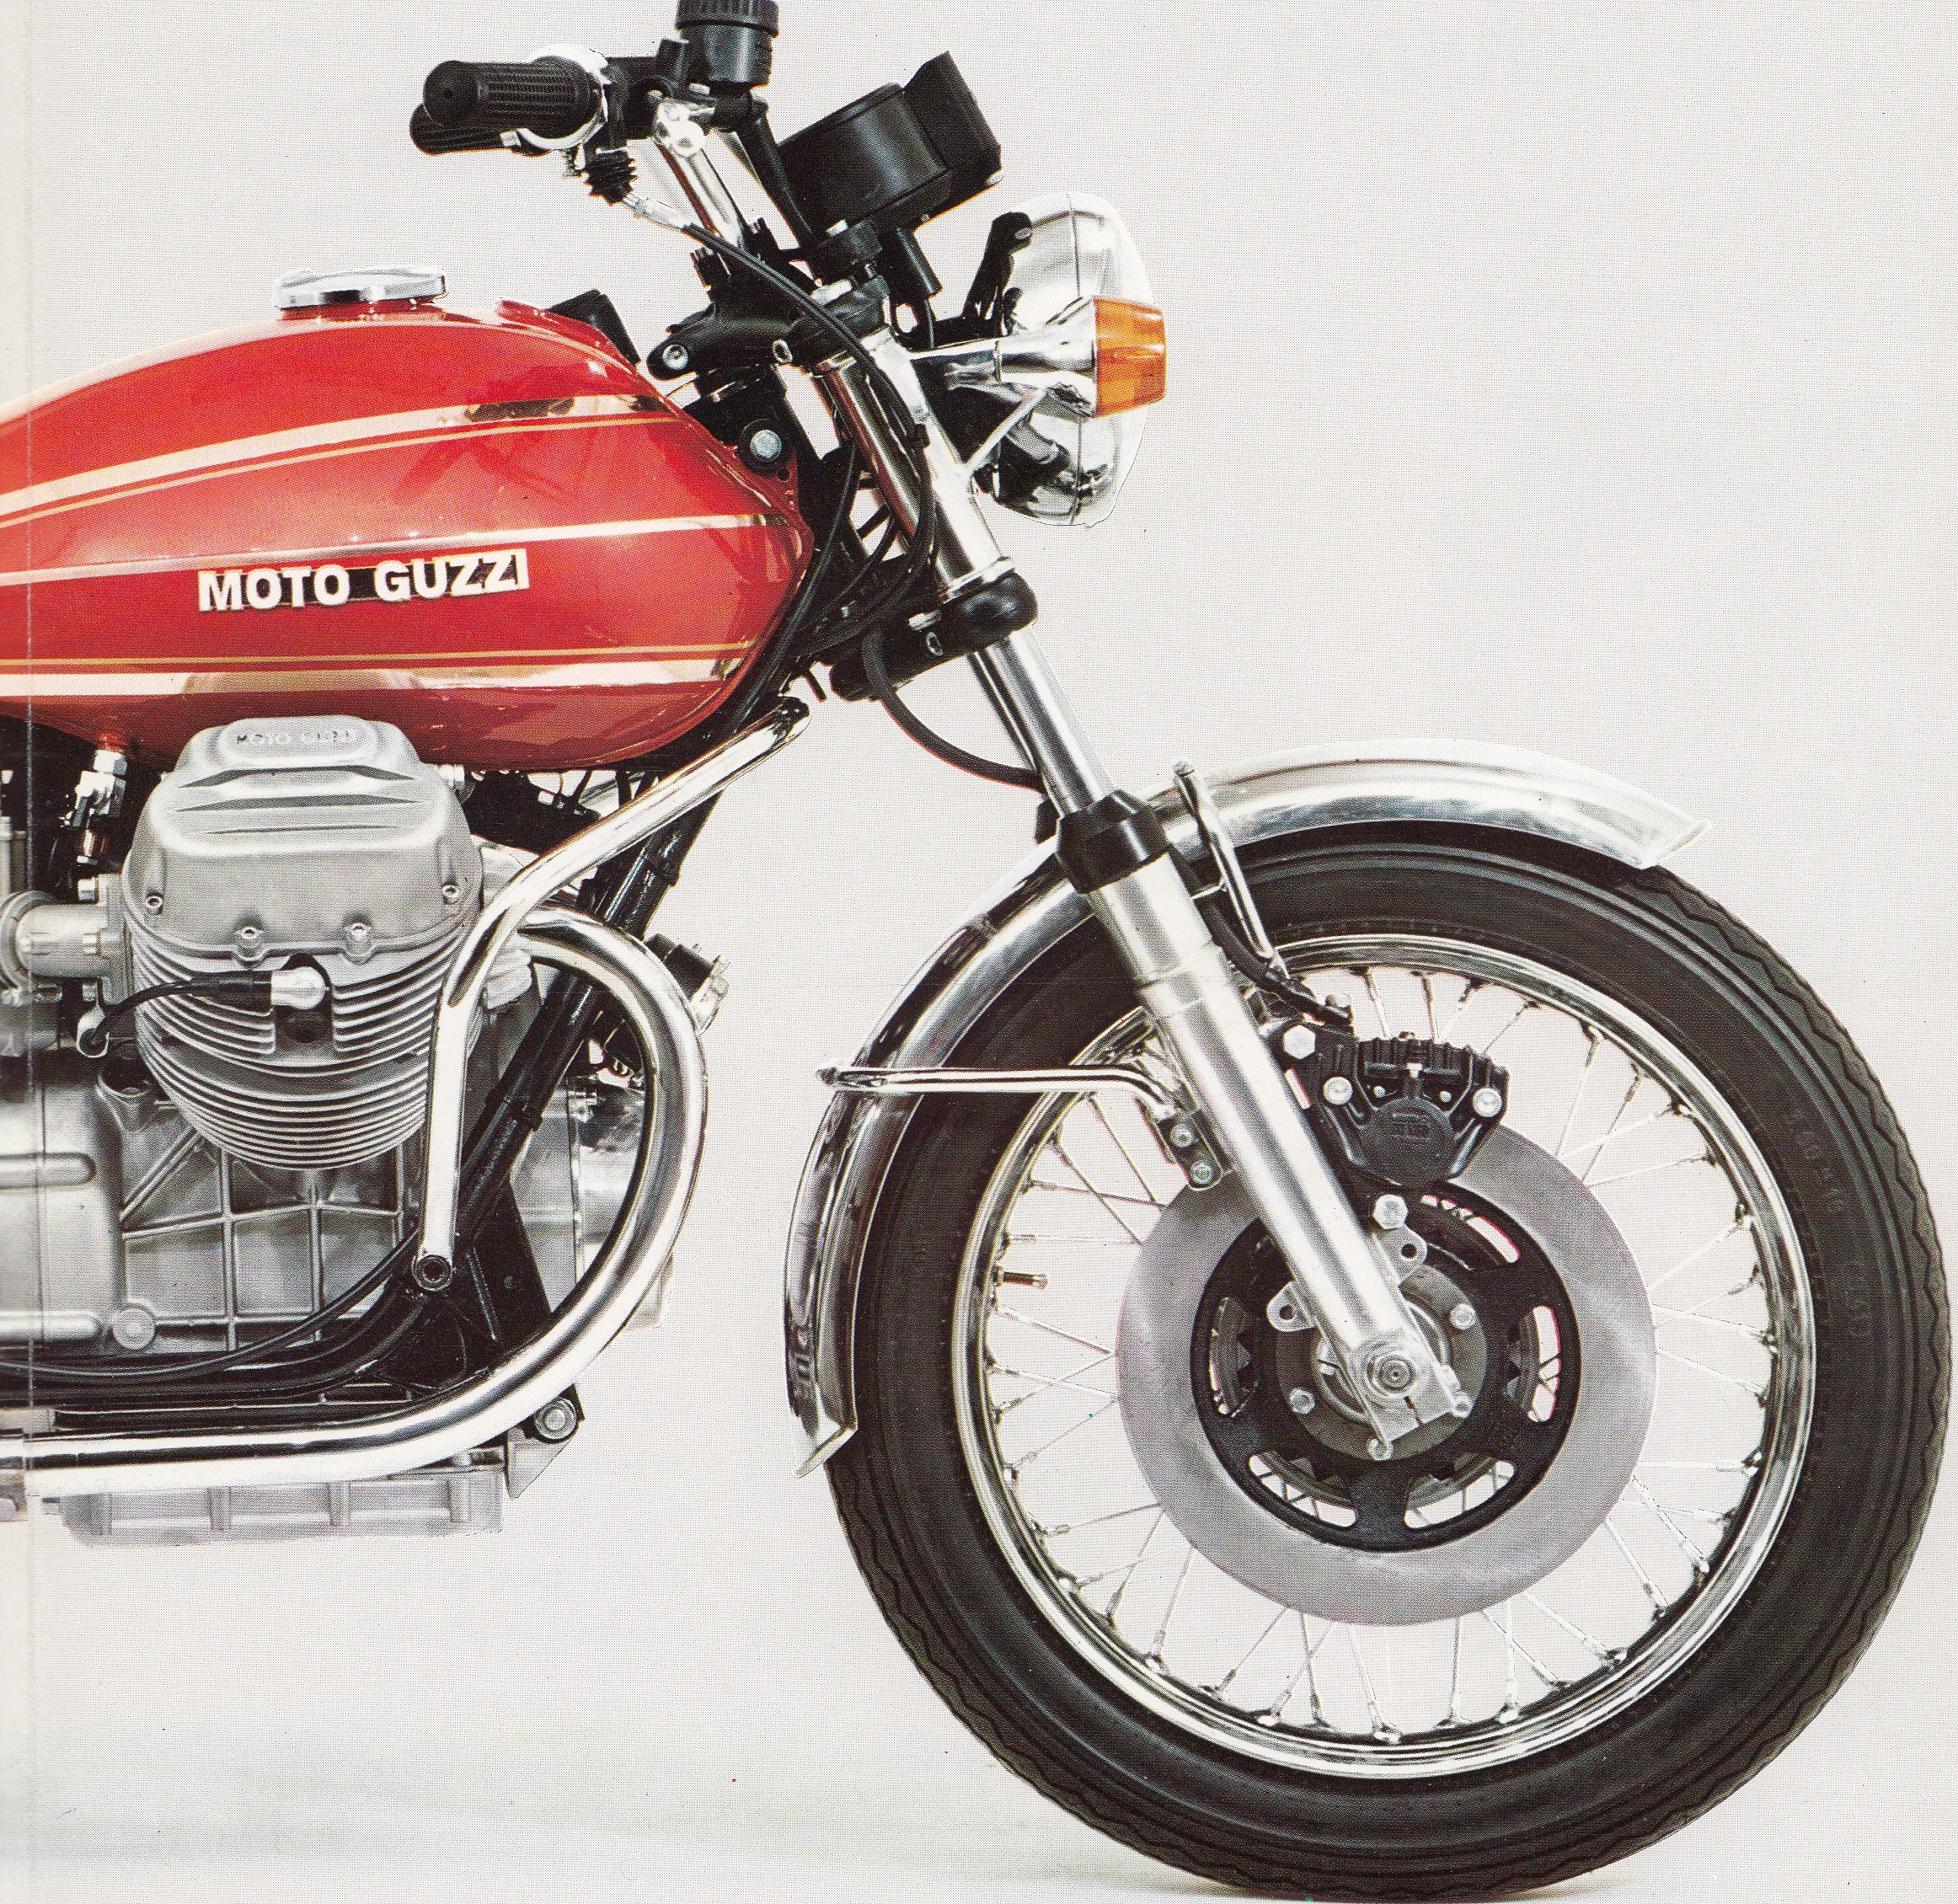 Brochure - Moto Guzzi 850 T